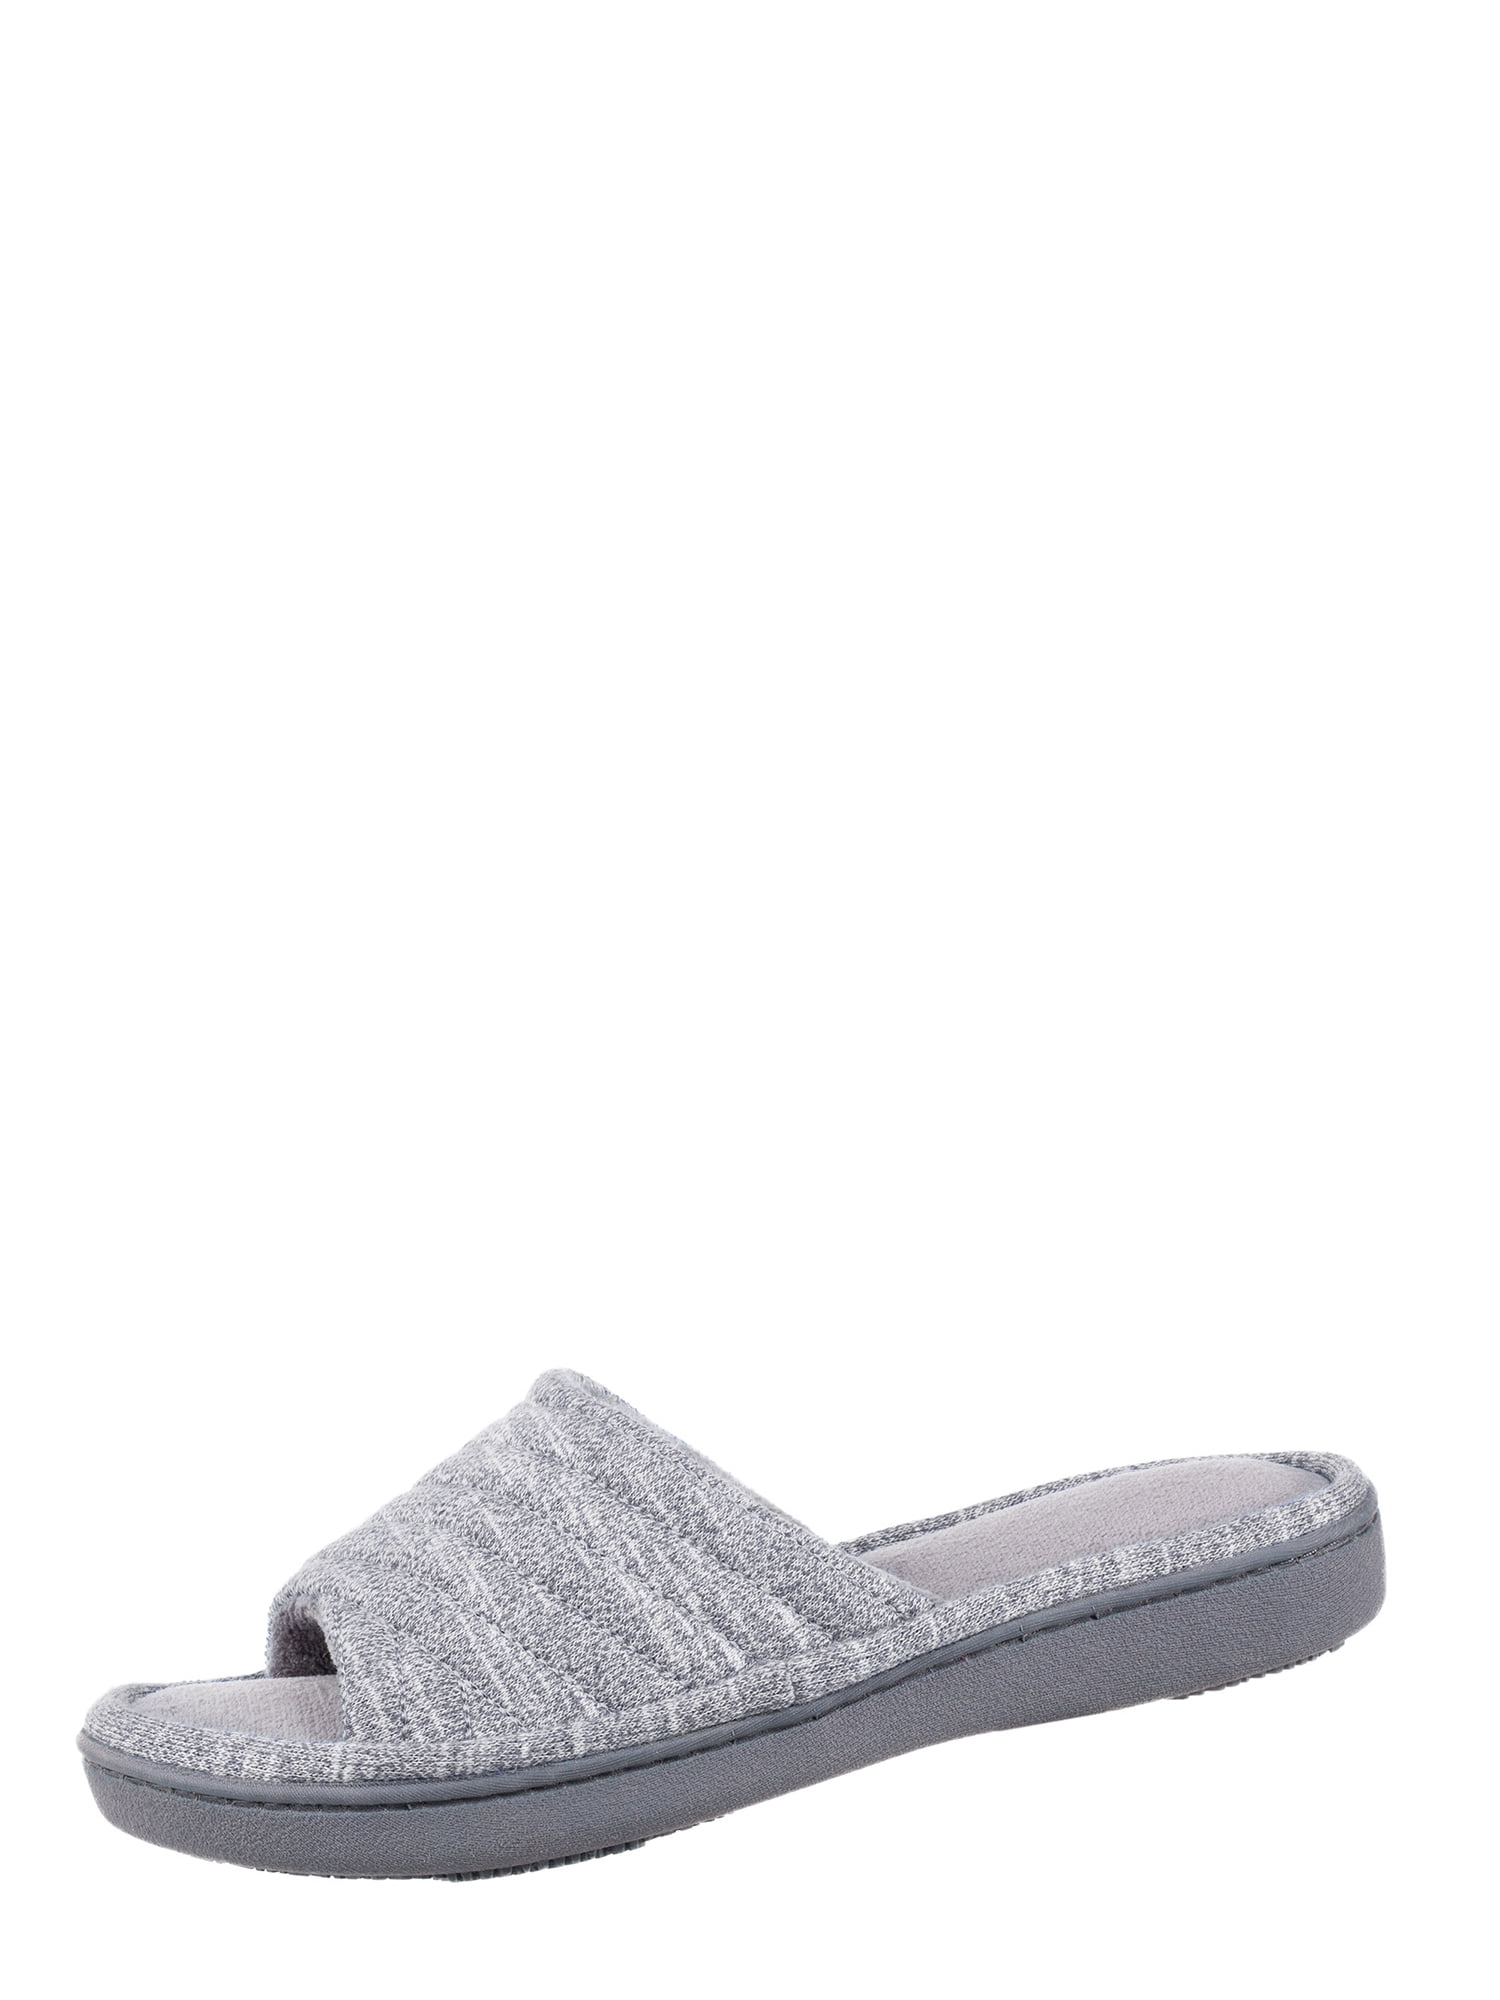 slide slippers women's